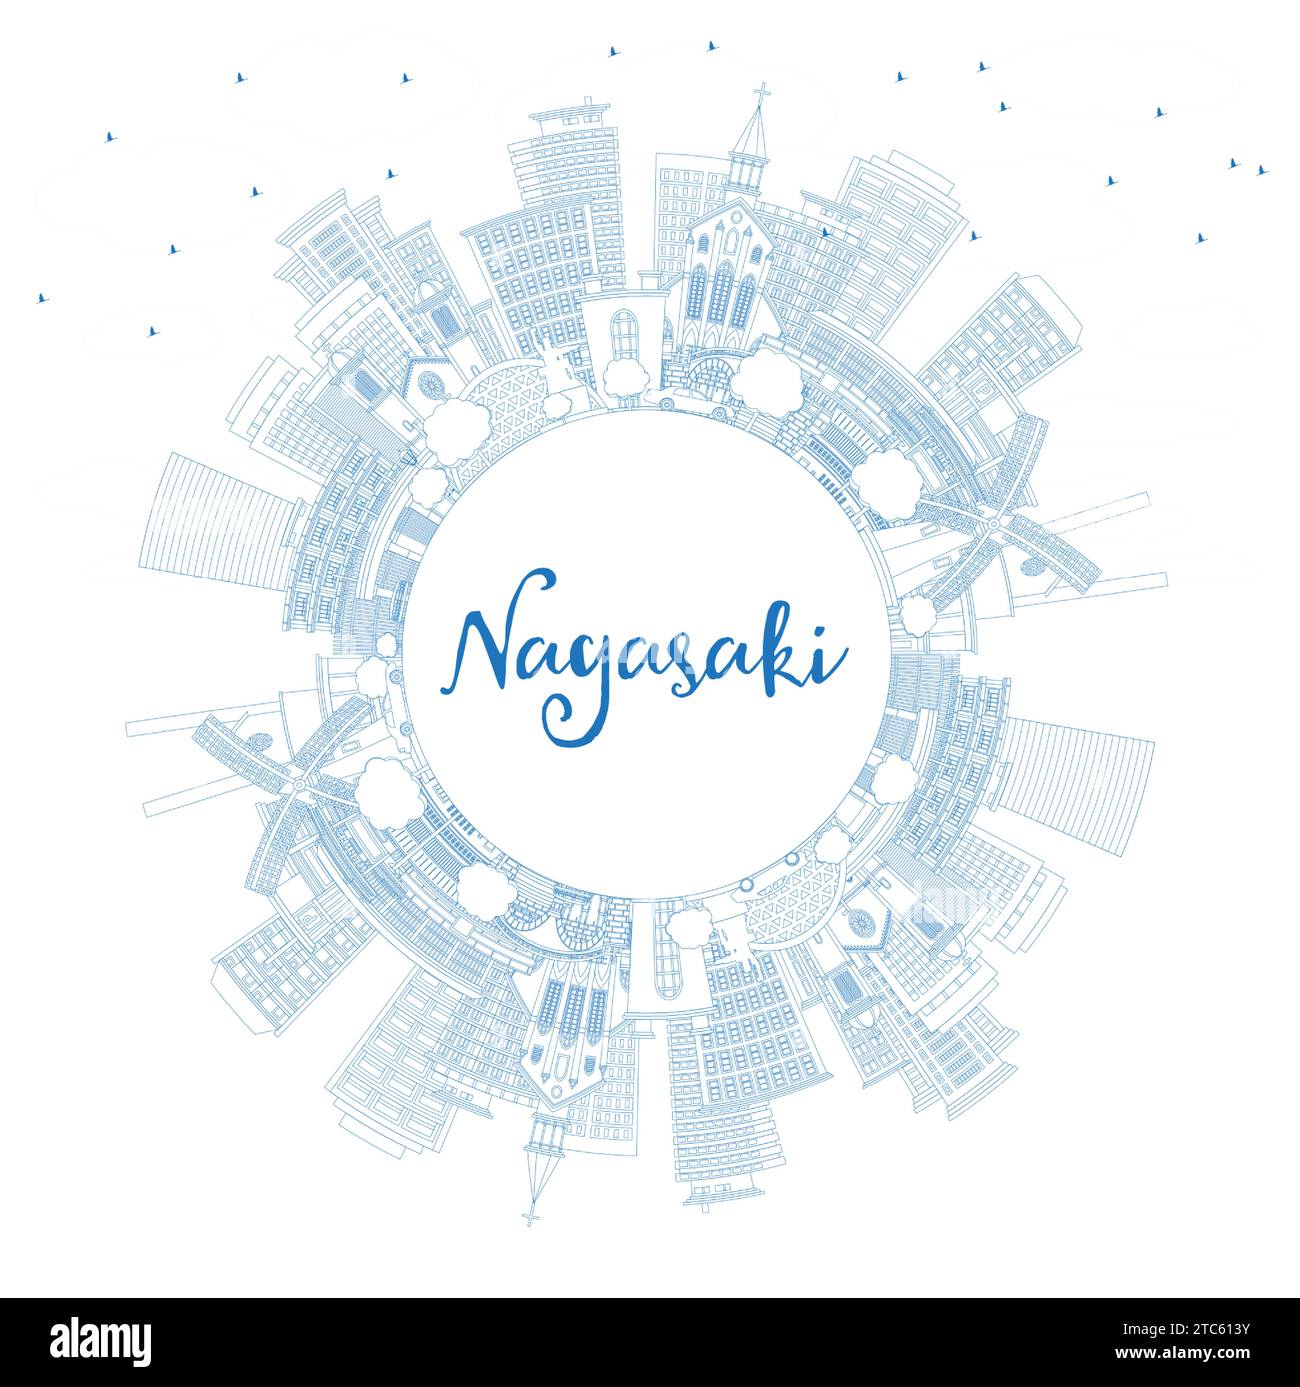 Contour Nagasaki Japan City Skyline avec des bâtiments bleus et Copy Space. Illustration vectorielle. Paysage urbain de Nagasaki avec des monuments. Voyages d'affaires et à destination Illustration de Vecteur